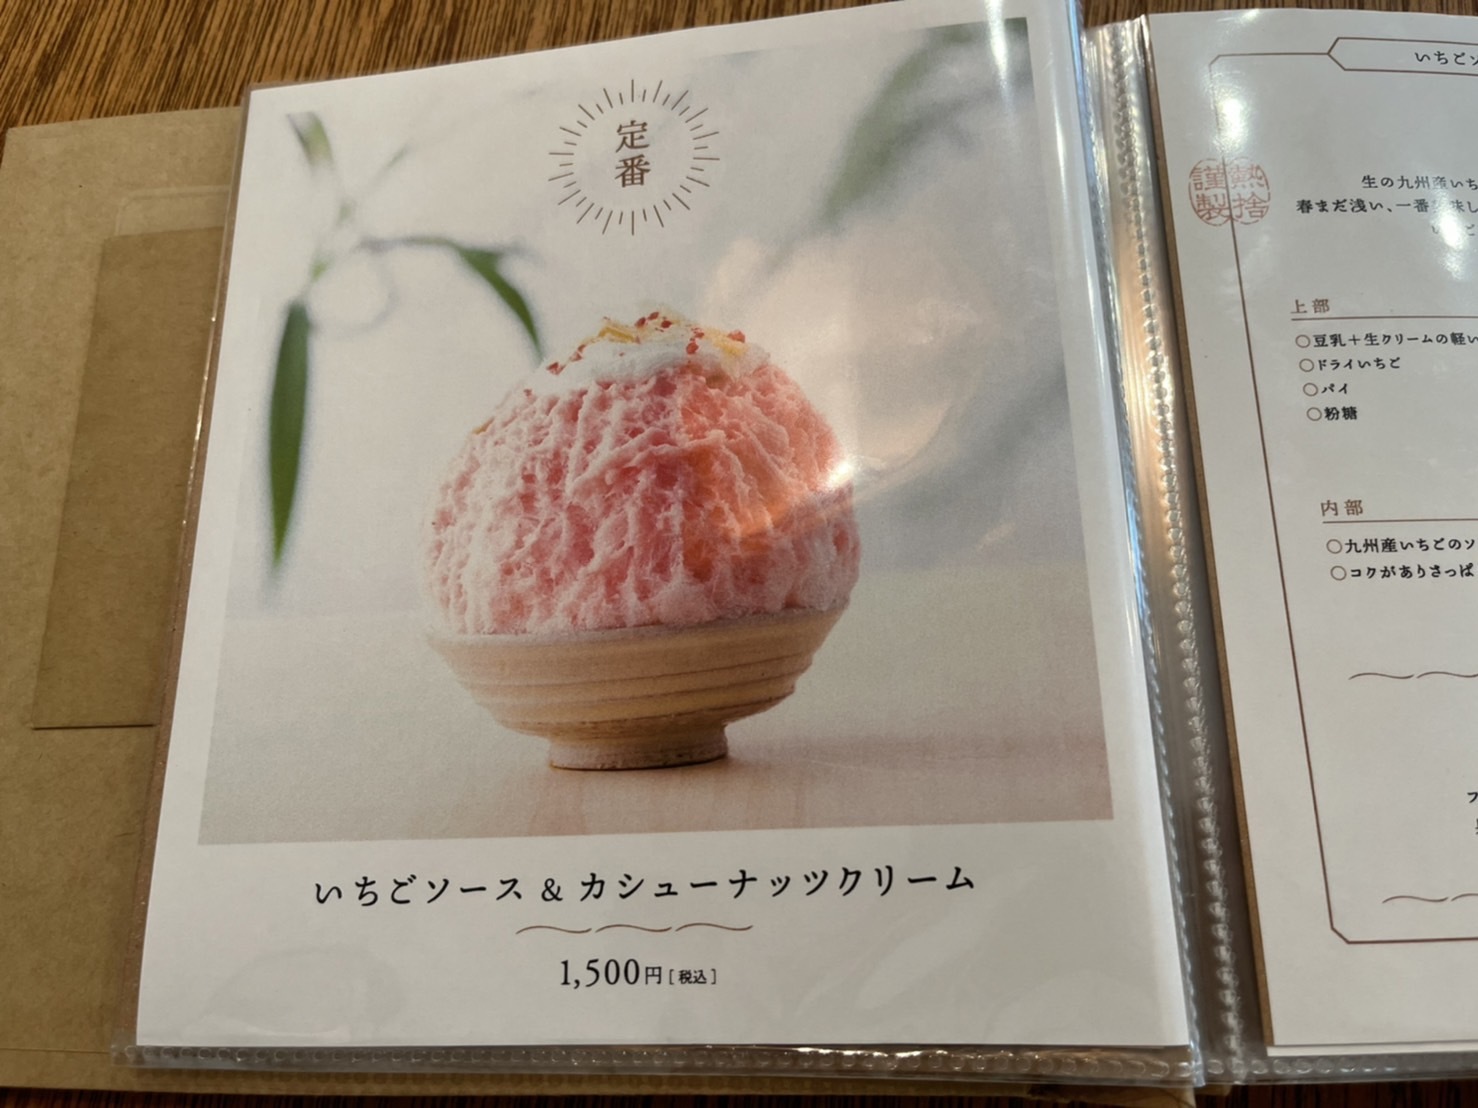 「いちごソース&カシューナッツクリーム」税込1500円